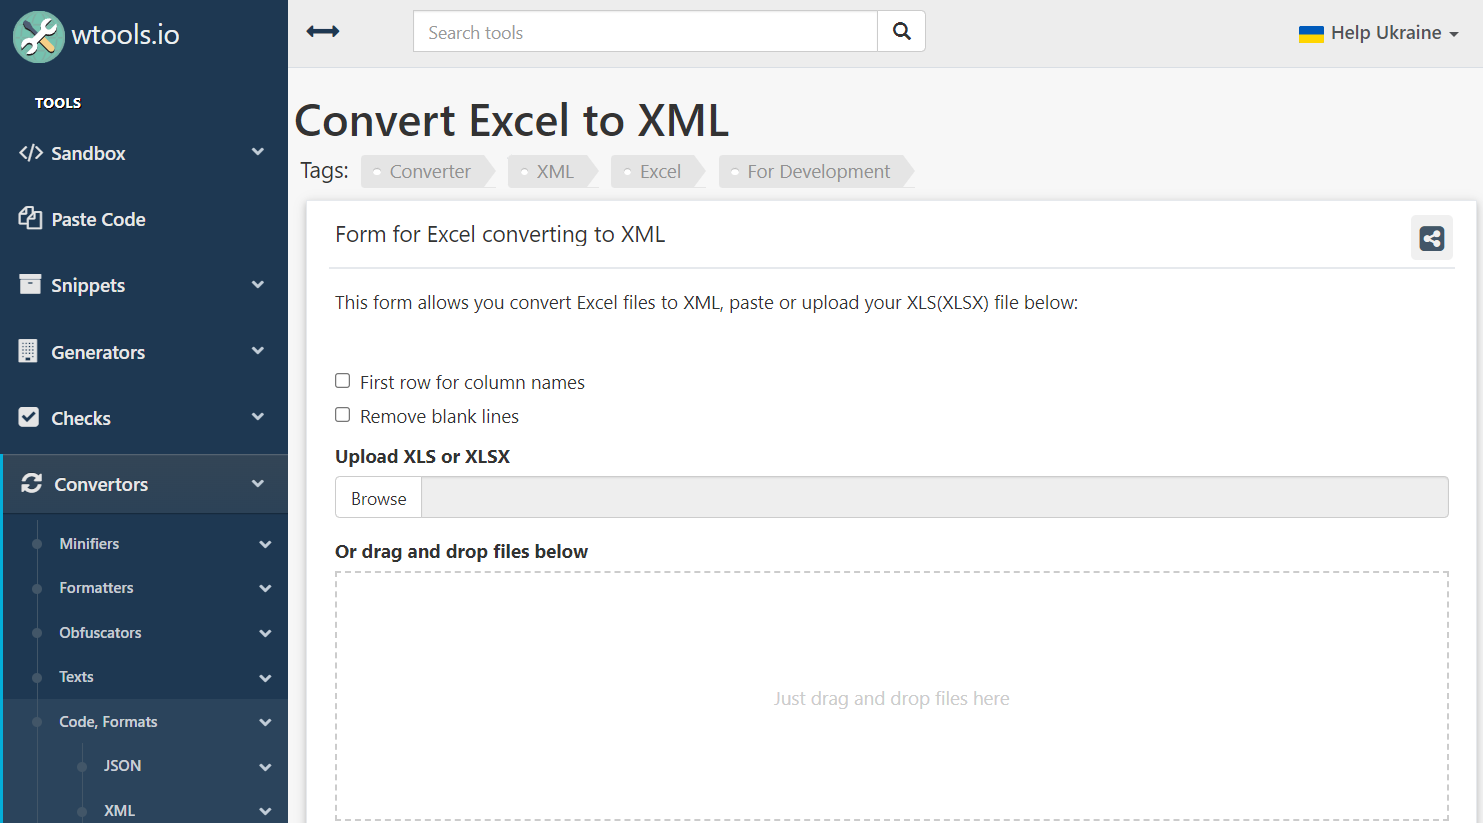 WTOOLS Excel to XML Converter